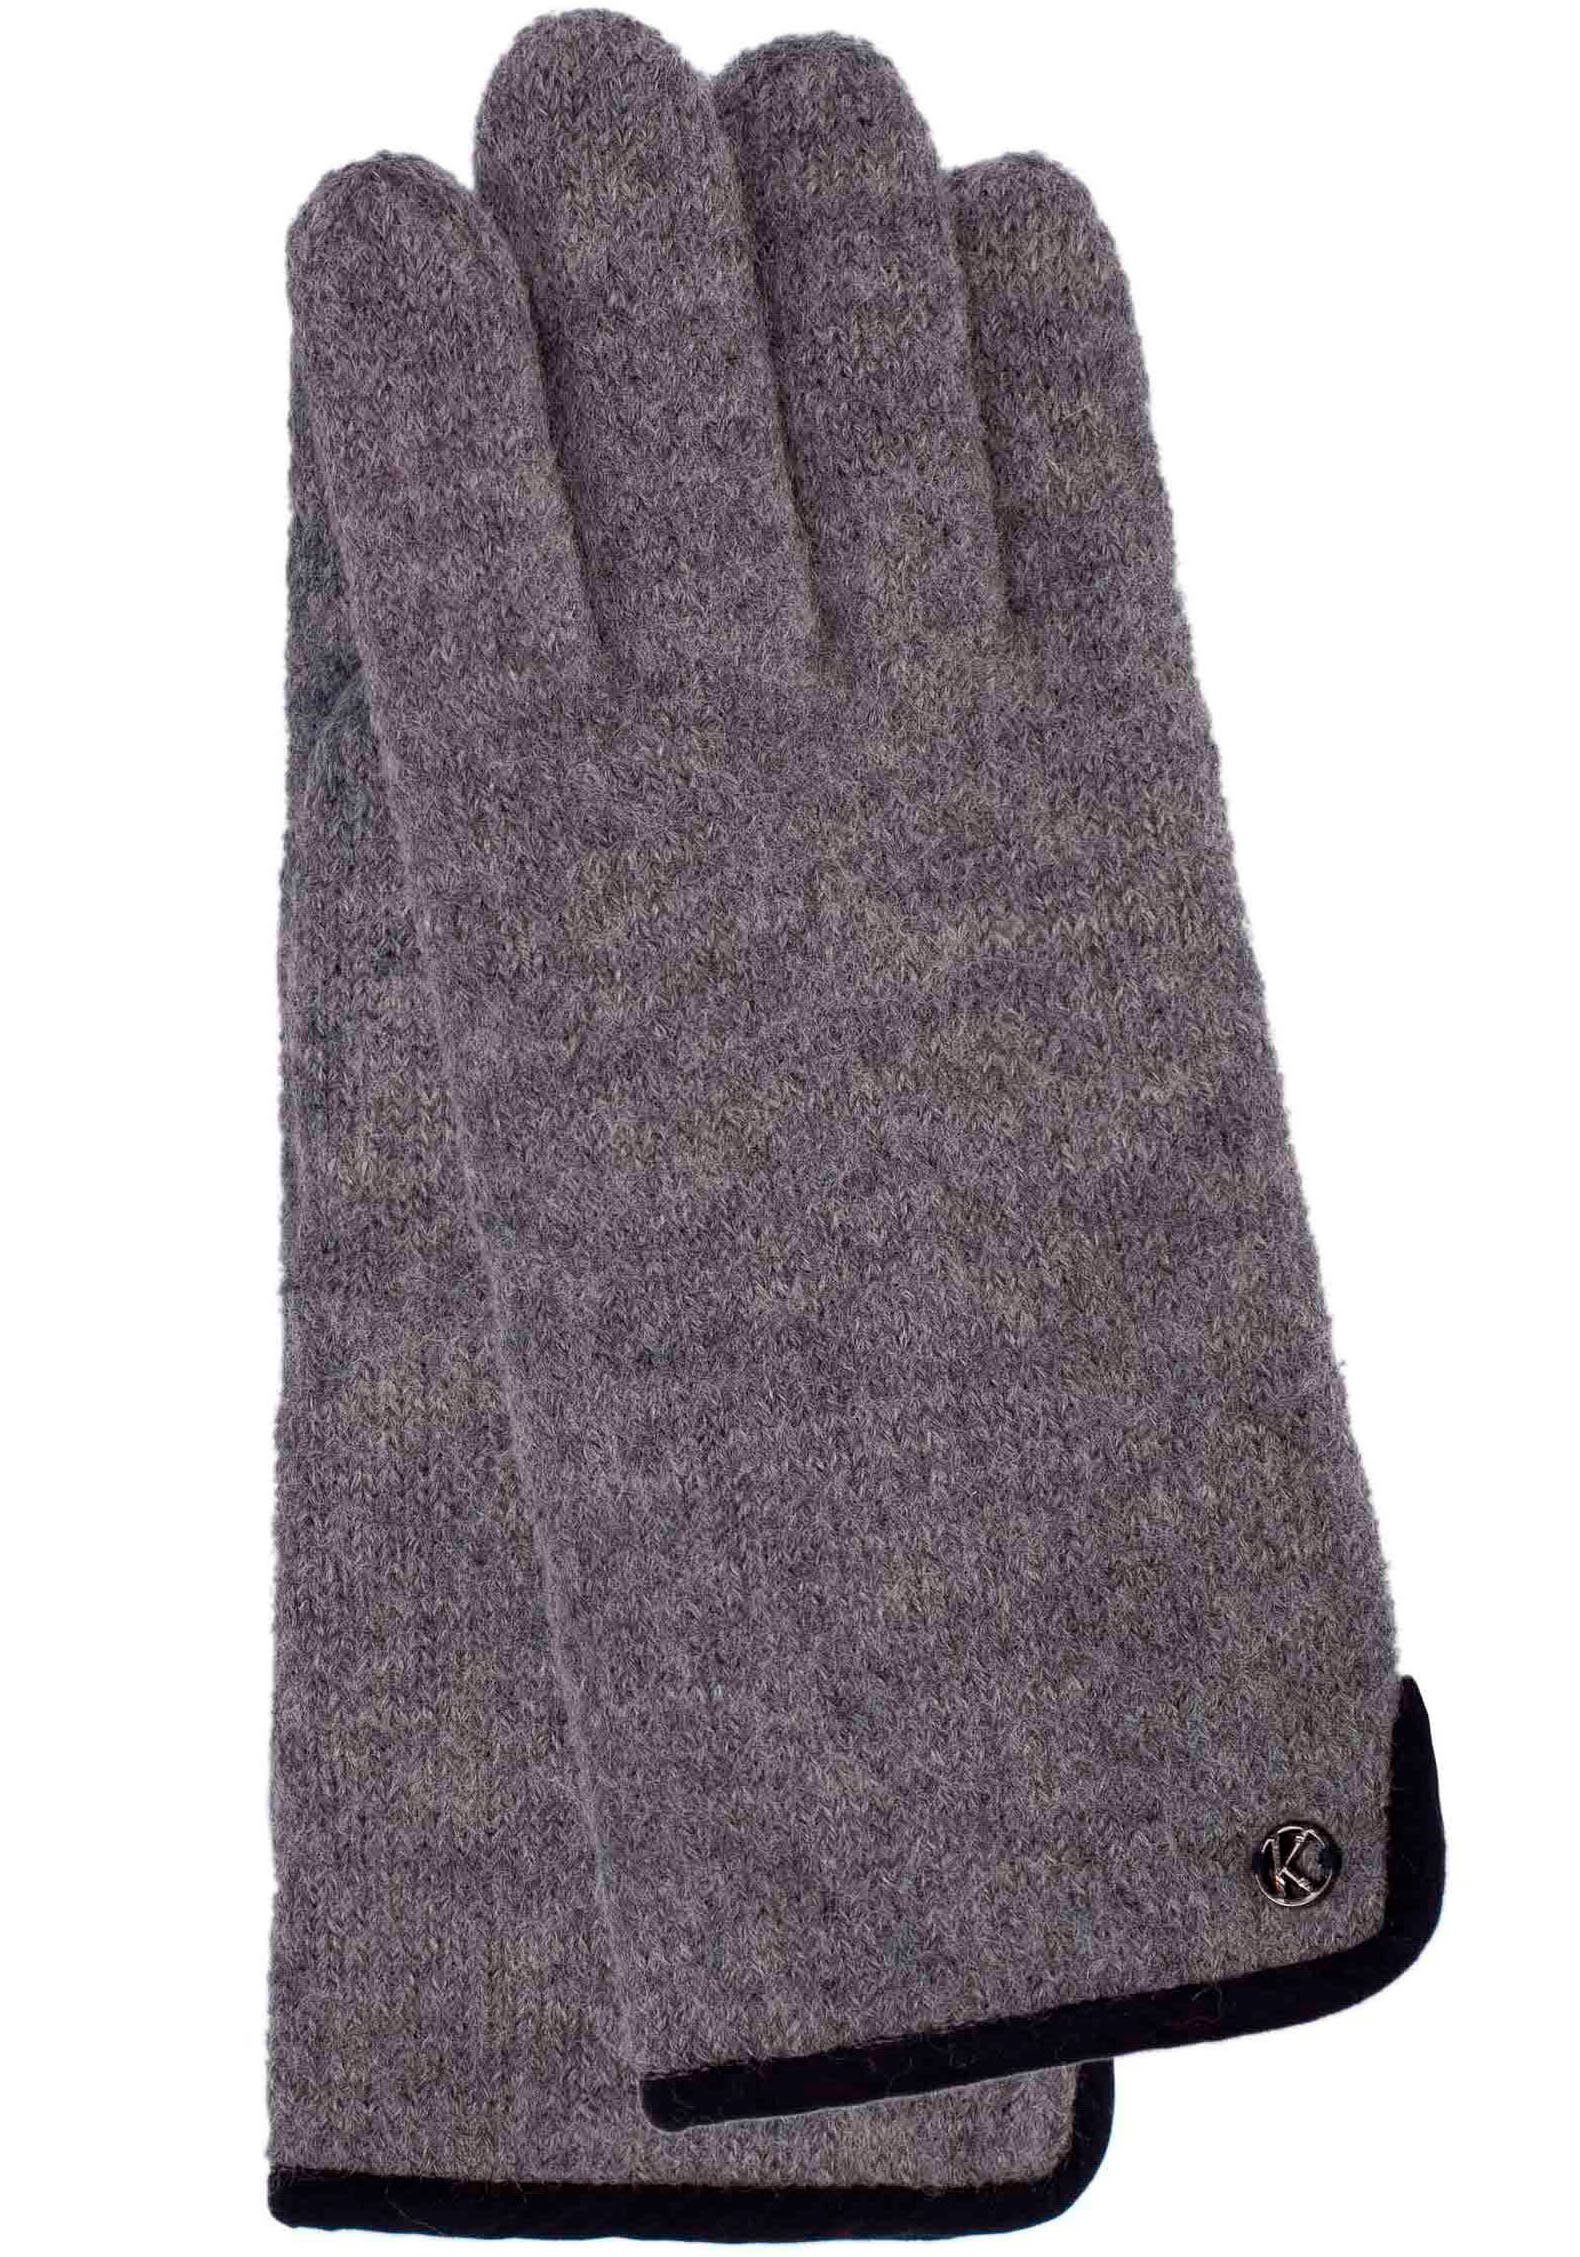 KESSLER Strickhandschuhe Sasha aus gewalkter Schurwolle, Wind- und Wasserabweised light grey melange